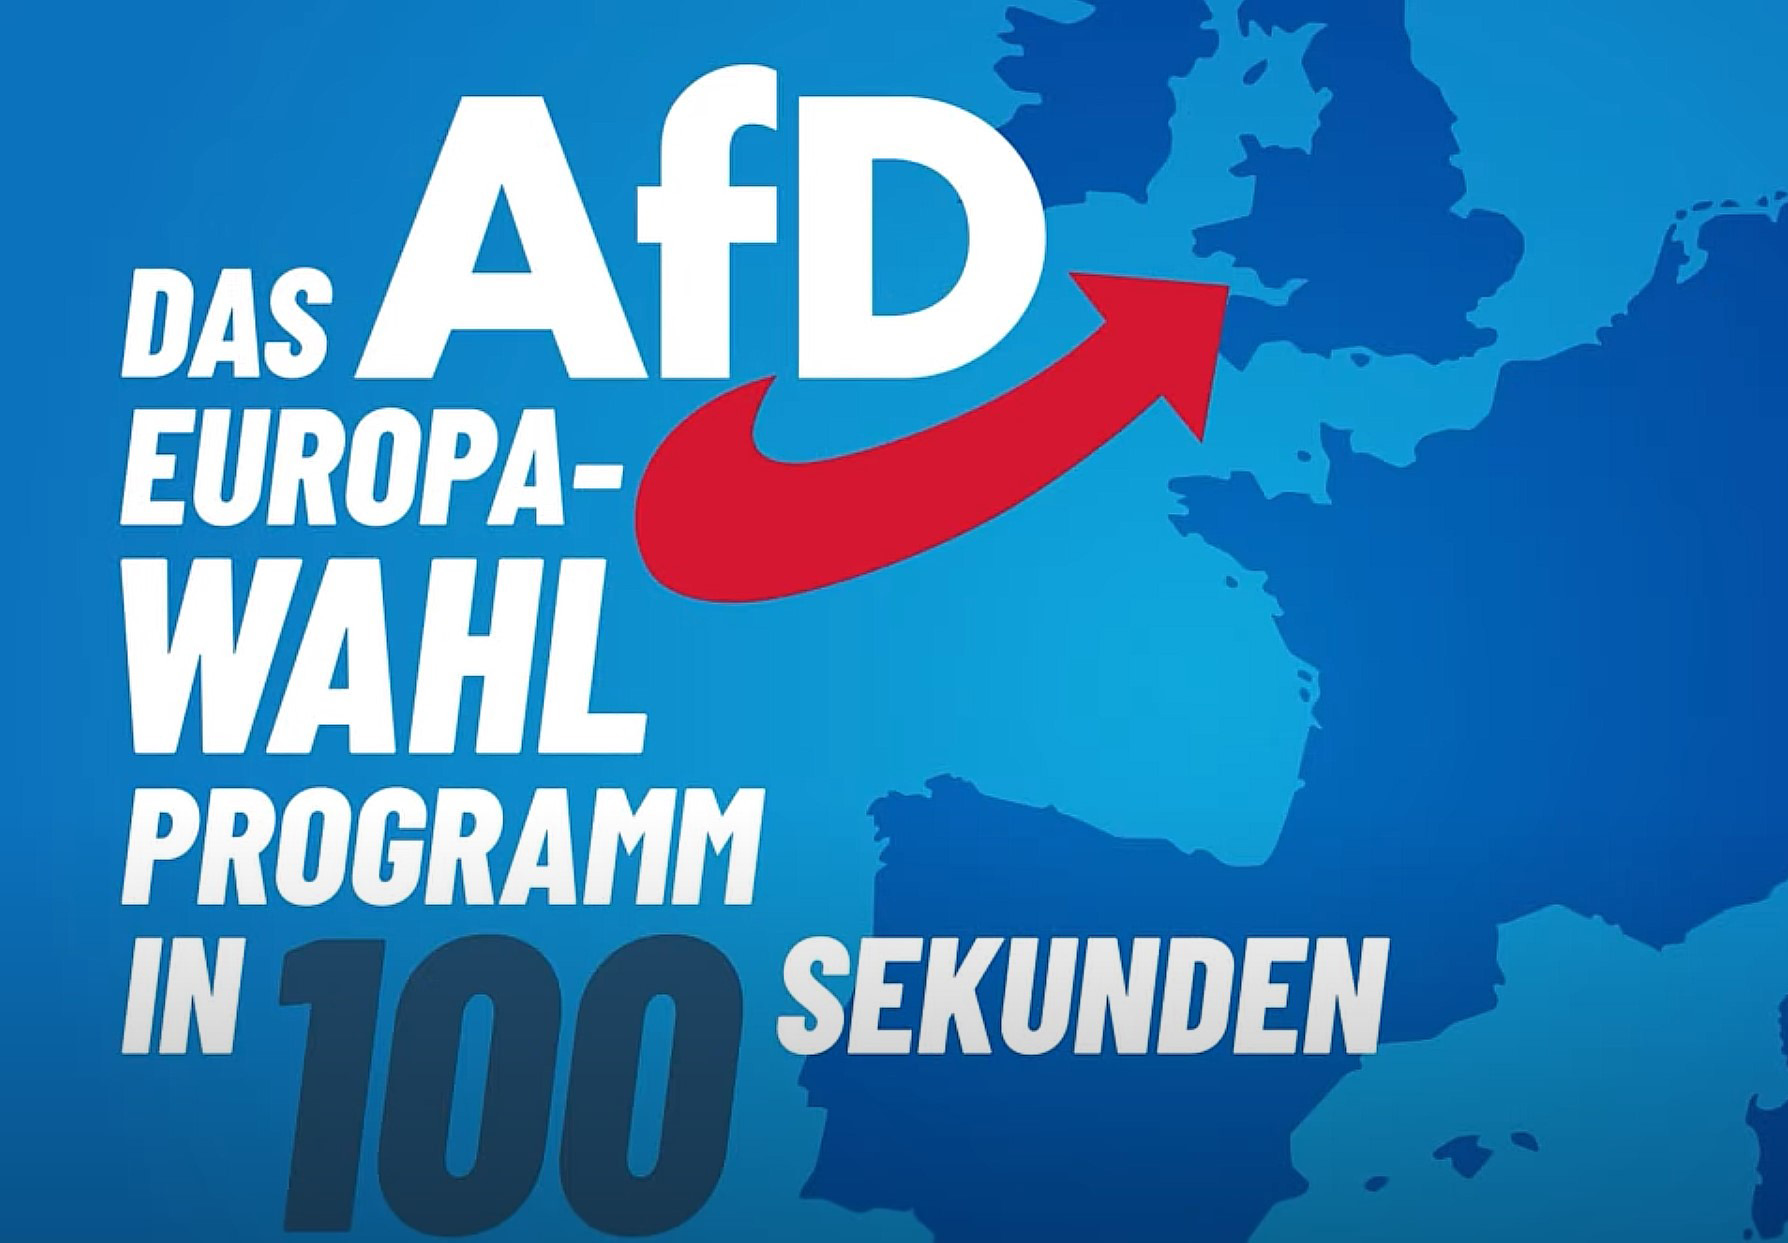 AfD Europawahlprogramm in 100 Sekunden